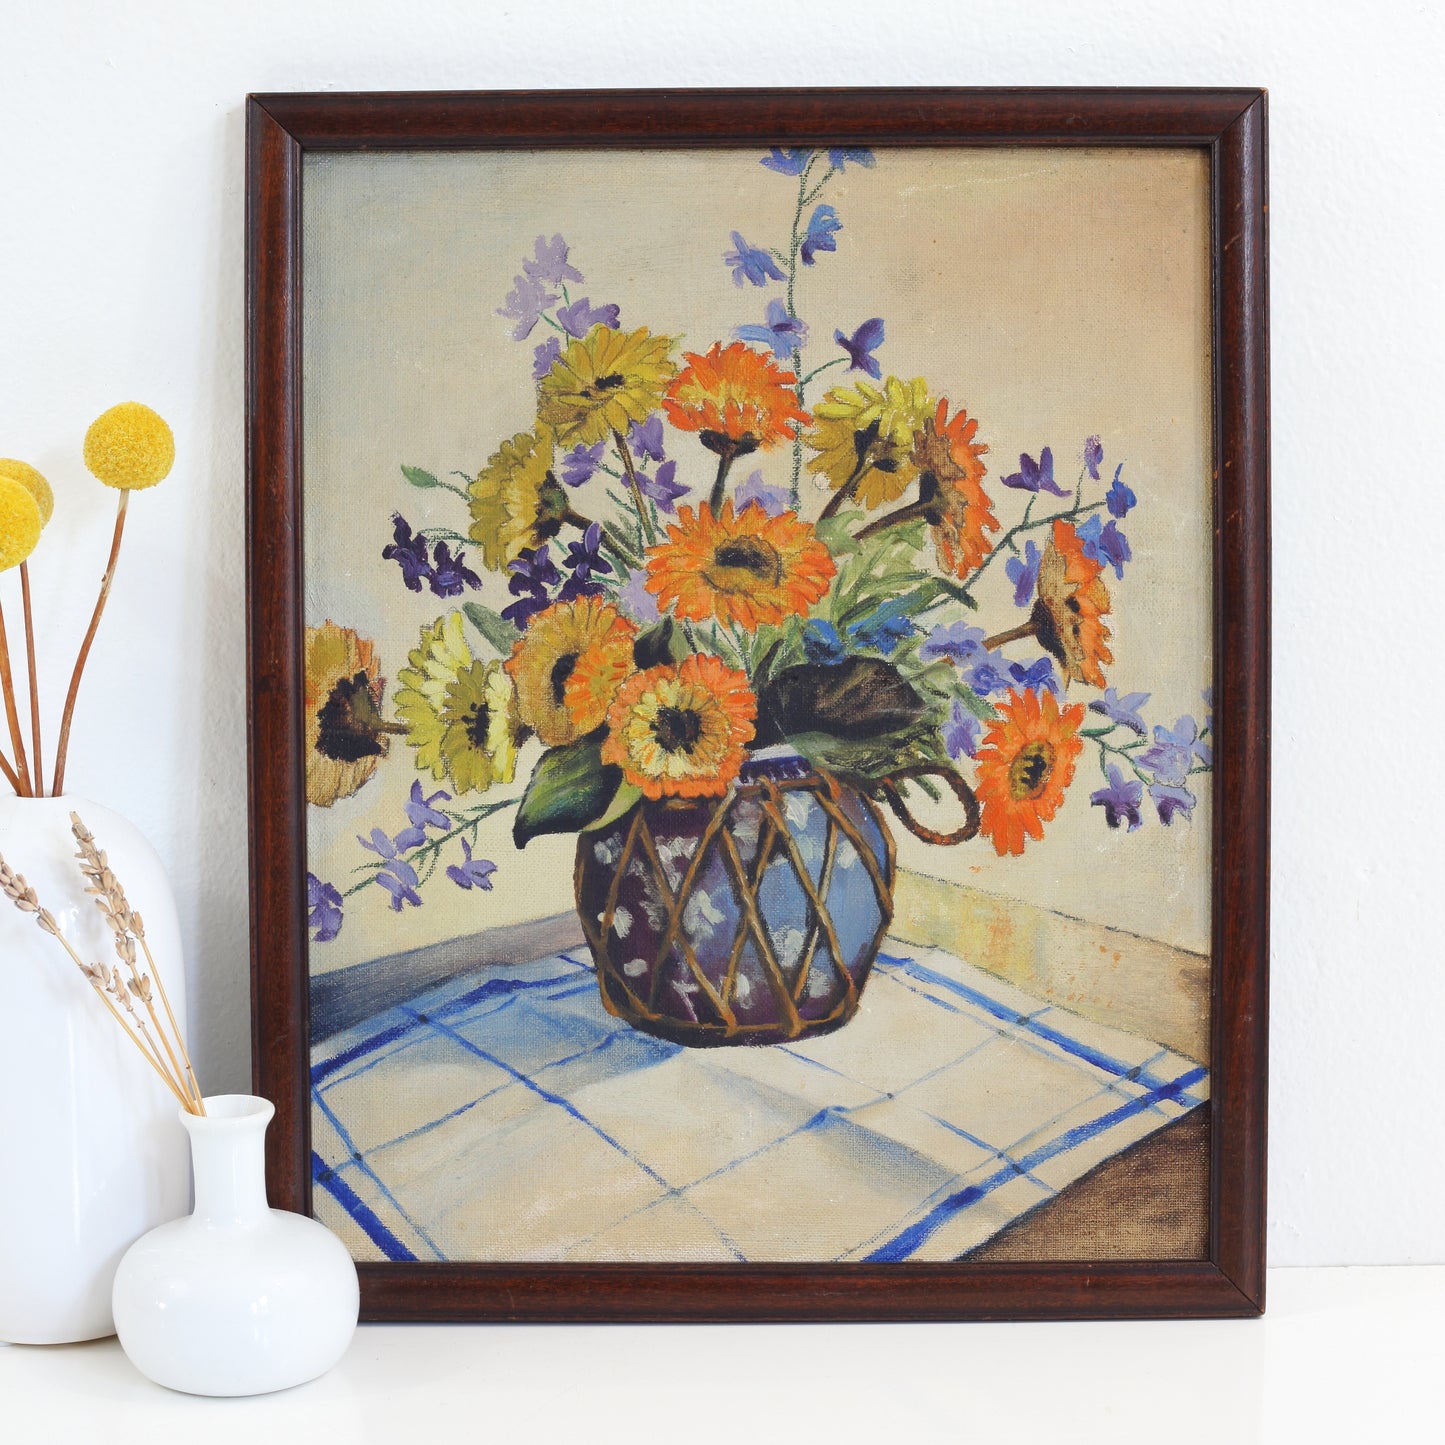 SOLD - Vintage Framed Floral Still Life Painting